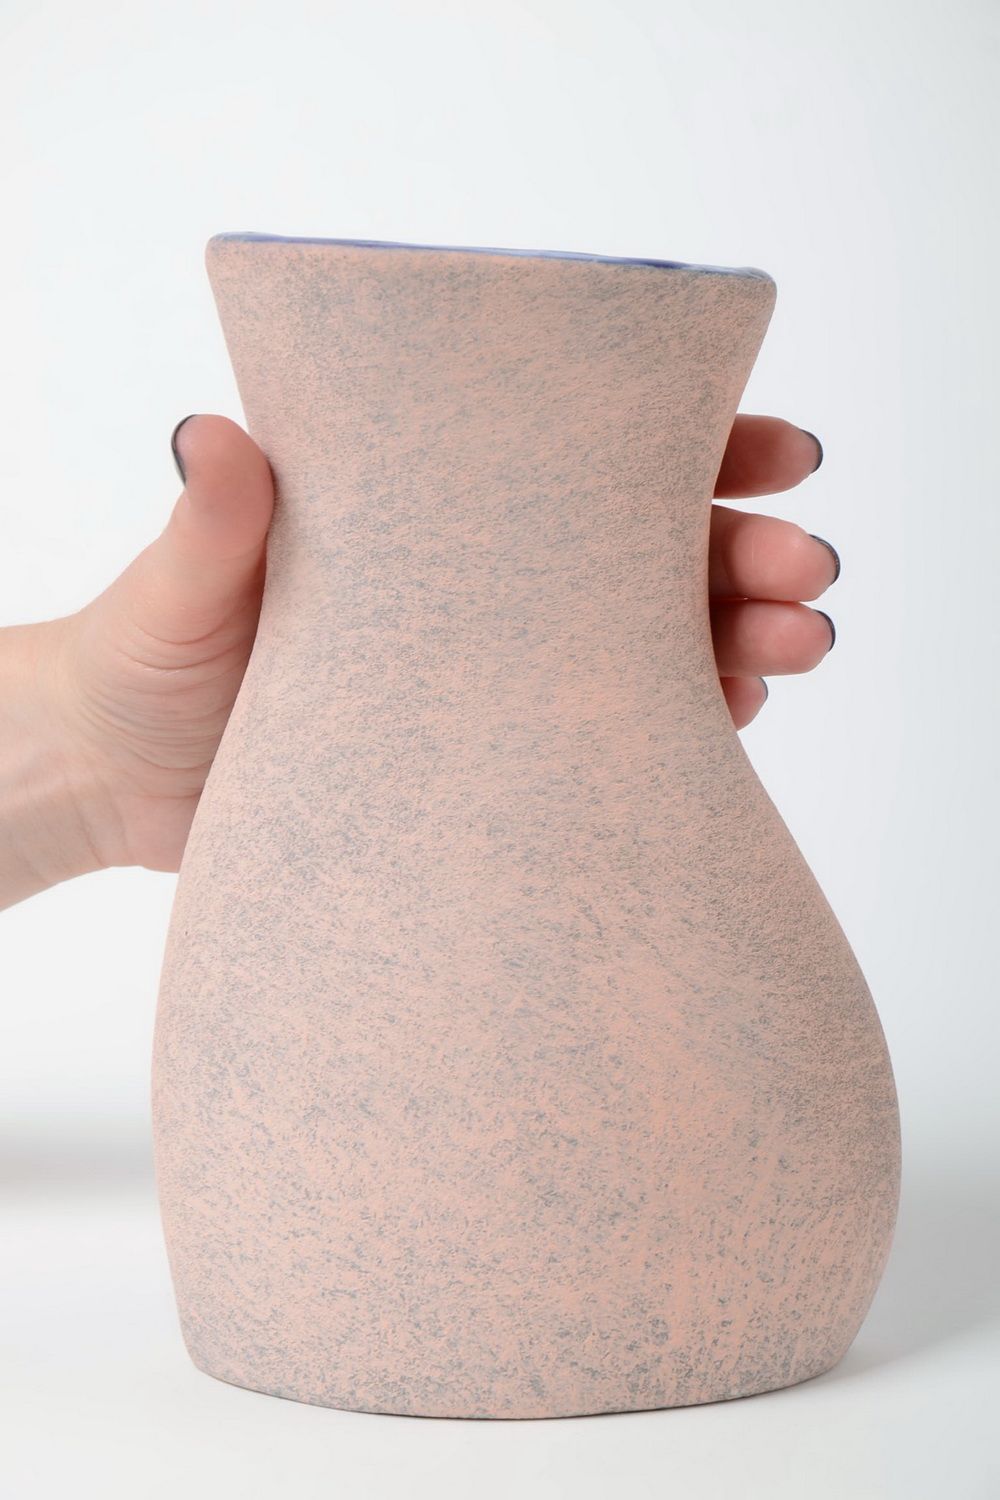 Künstler Vase handmade aus Halbporzellan mit Pigmenten bemalt 1.2 L für Blumen foto 5